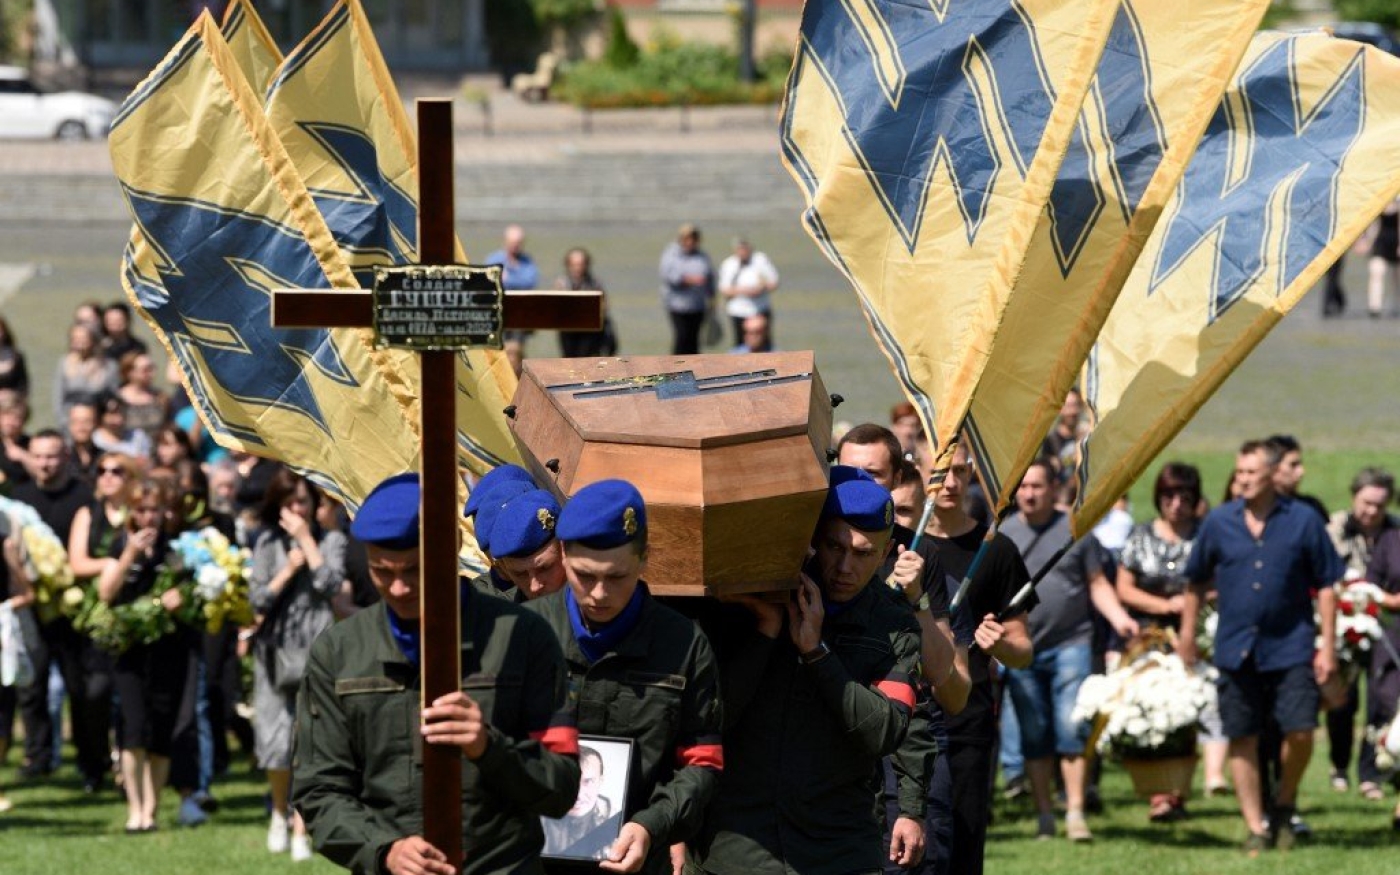 Des soldats ukrainiens portent le cercueil d’un militaire du régiment ultra-nationaliste Azov tué au cours de l’invasion russe de l’Ukraine, le 29 juillet 2022 à Lviv (AFP)